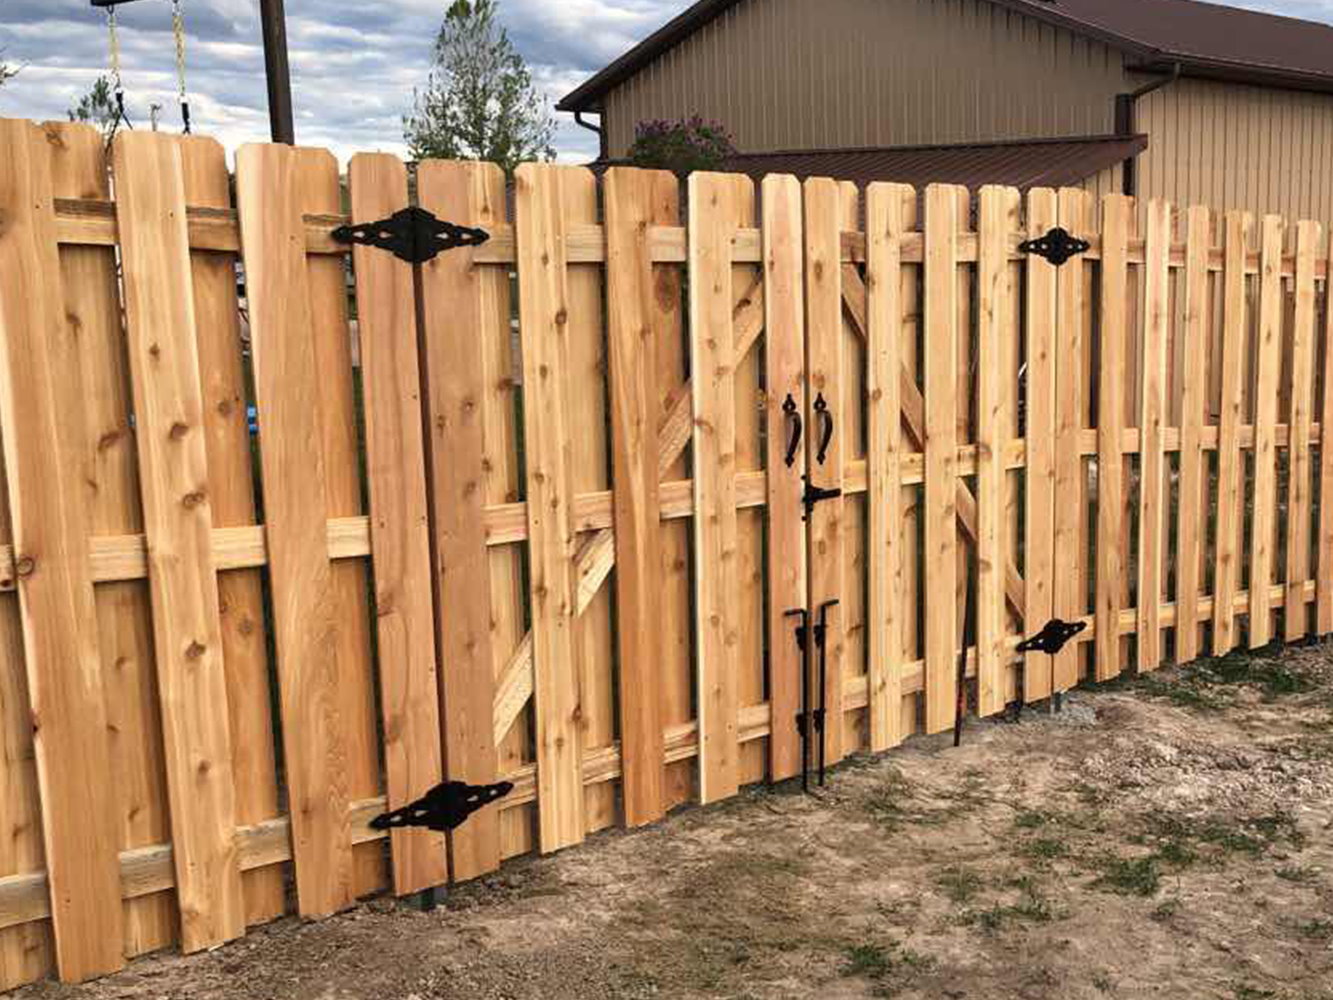 Ethete WY Shadowbox style wood fence